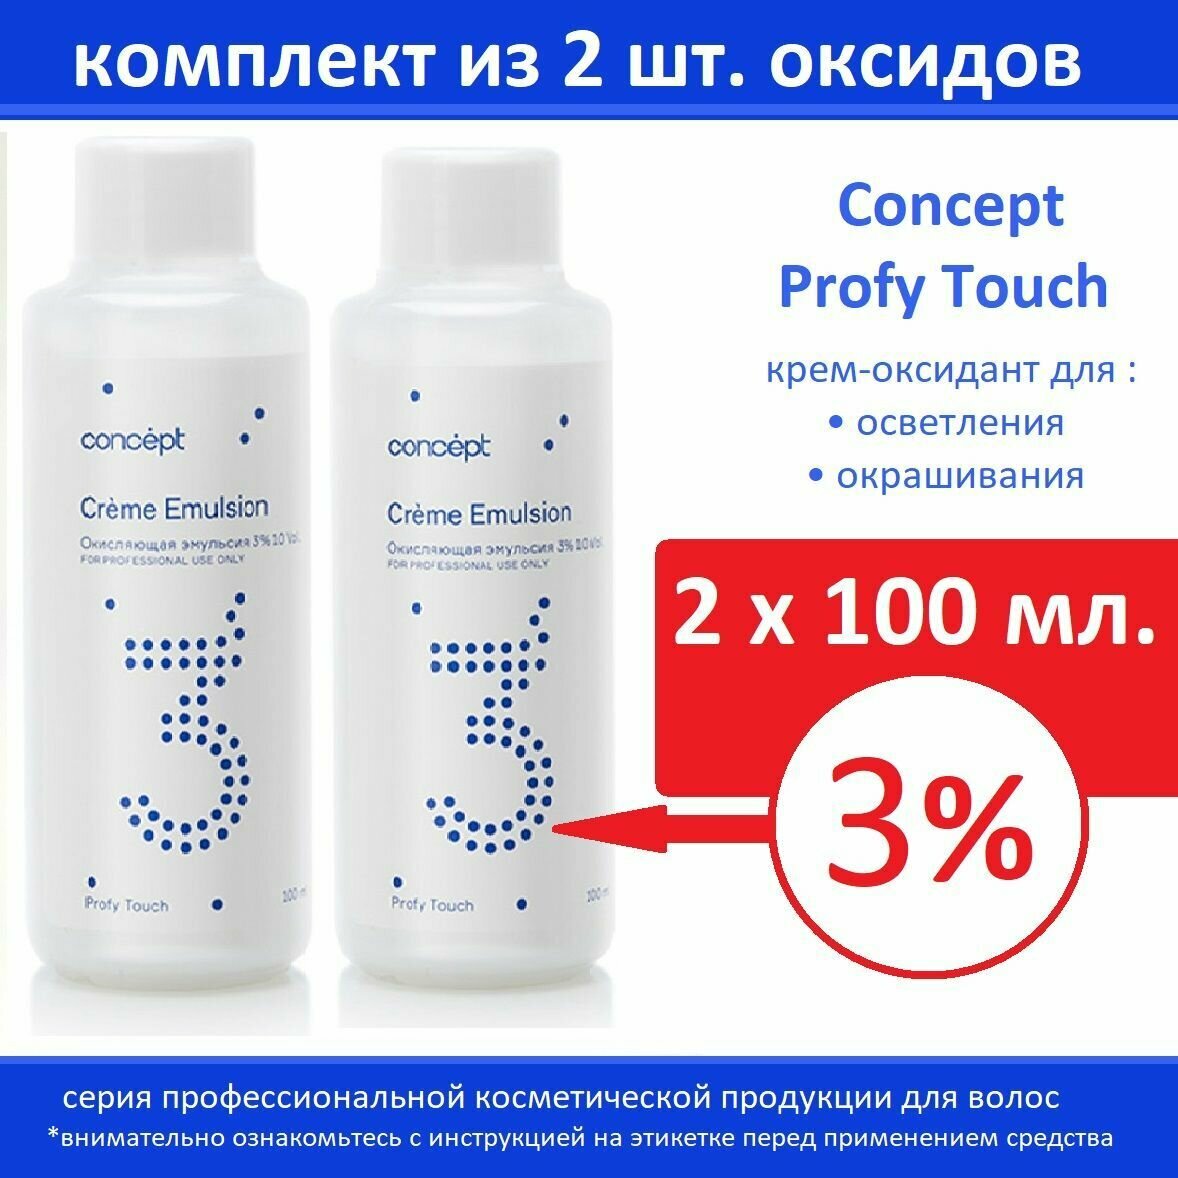 Оксидант Concept Крем-оксид для окрашивания/осветления 3% Profy Touch, 100 мл (Комплект 2 шт. х 100мл)